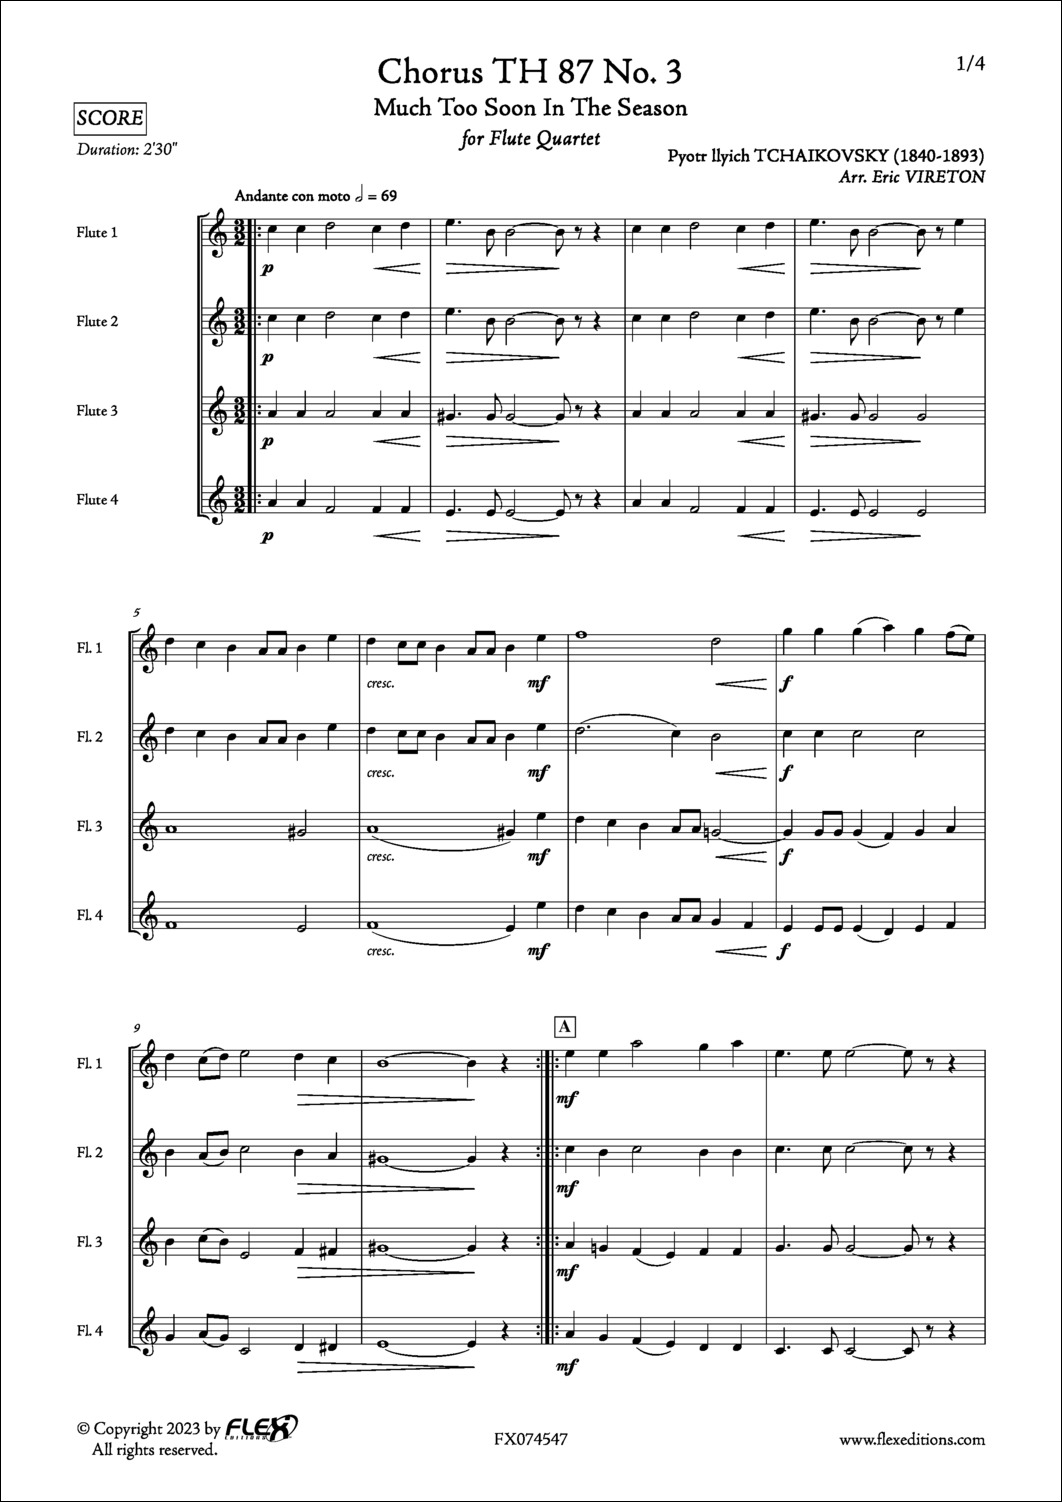 Choeur TH 87 No. 3 - P. I. TCHAIKOVSKY - <font color=#666666>Quatuor de Flûtes</font>